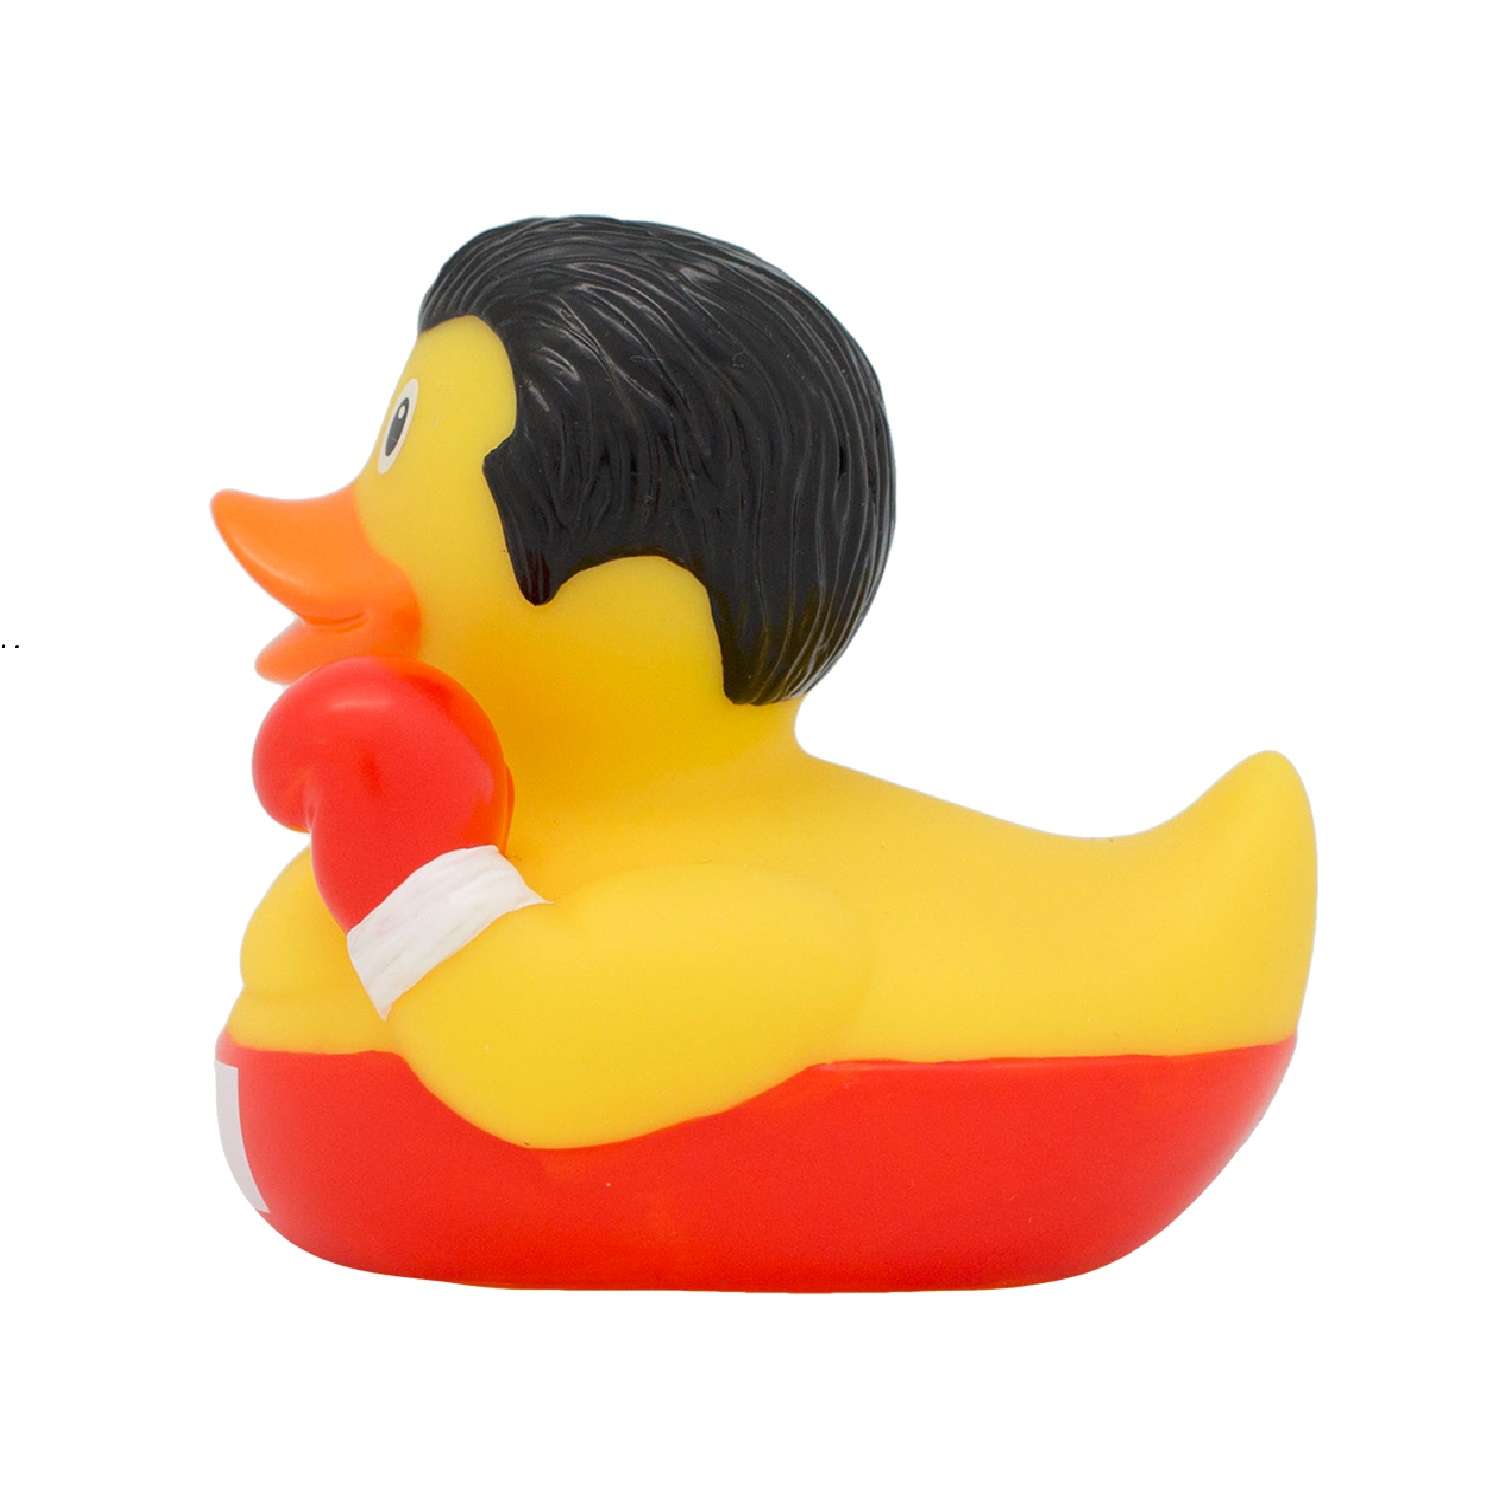 Игрушка Funny ducks для ванной Боксер уточка 1285 - фото 3